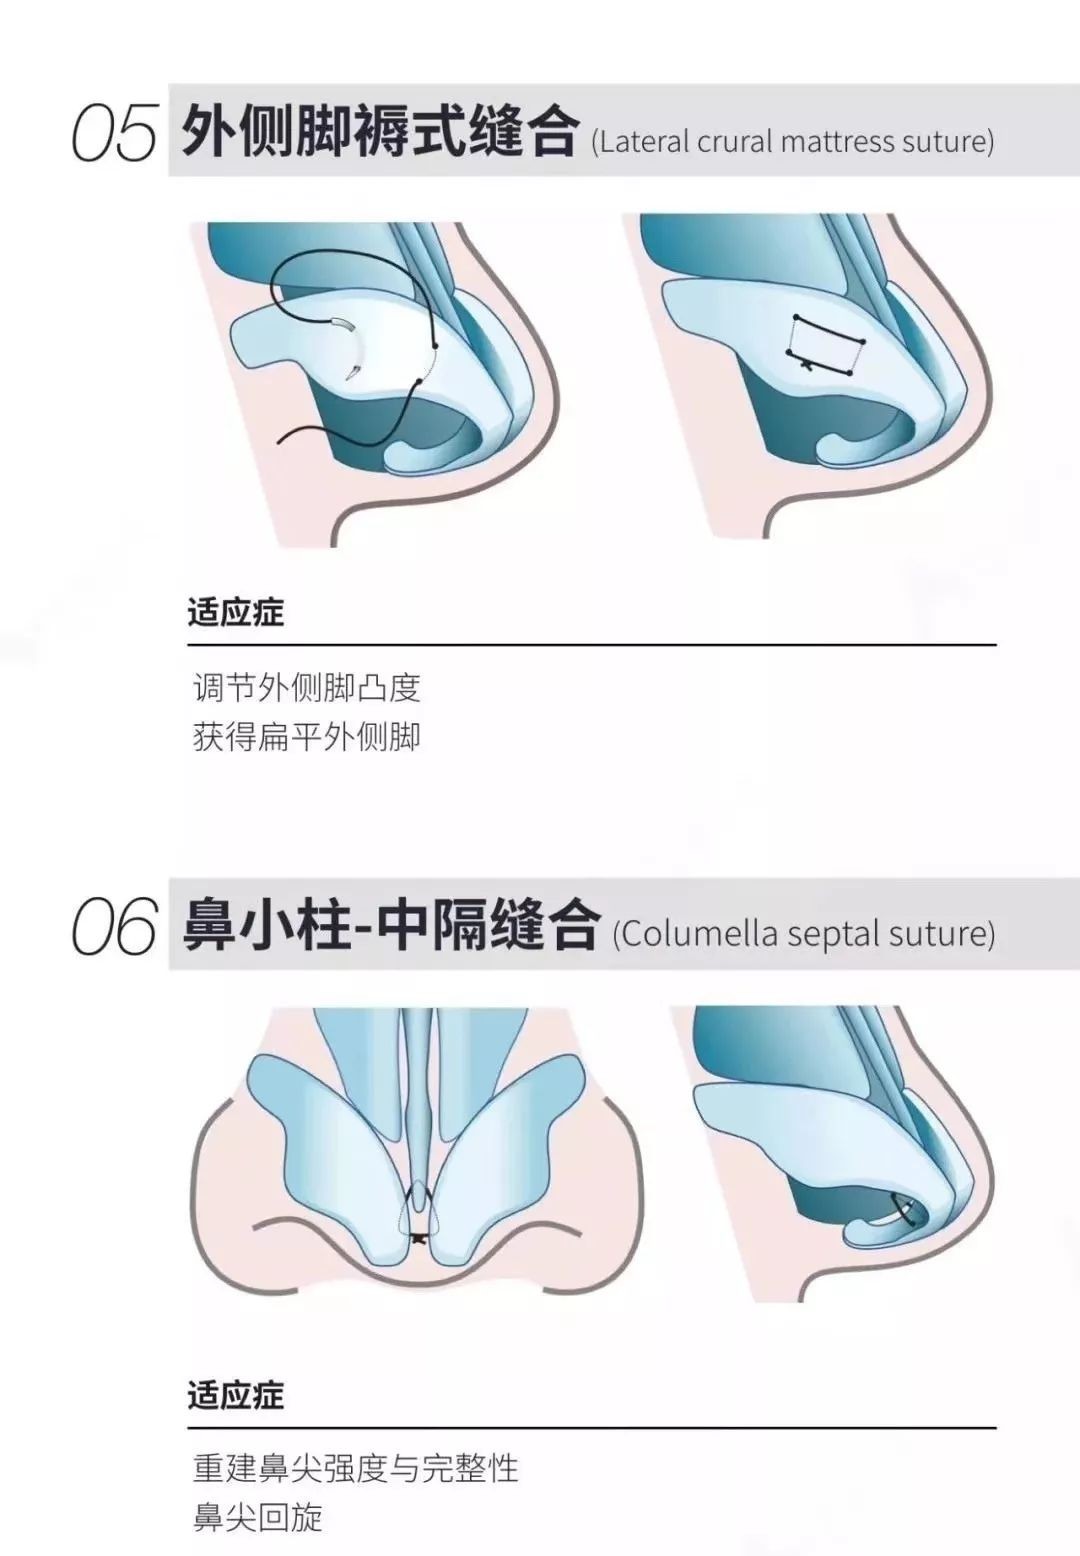 【图示讲解】13种鼻尖缝合技术